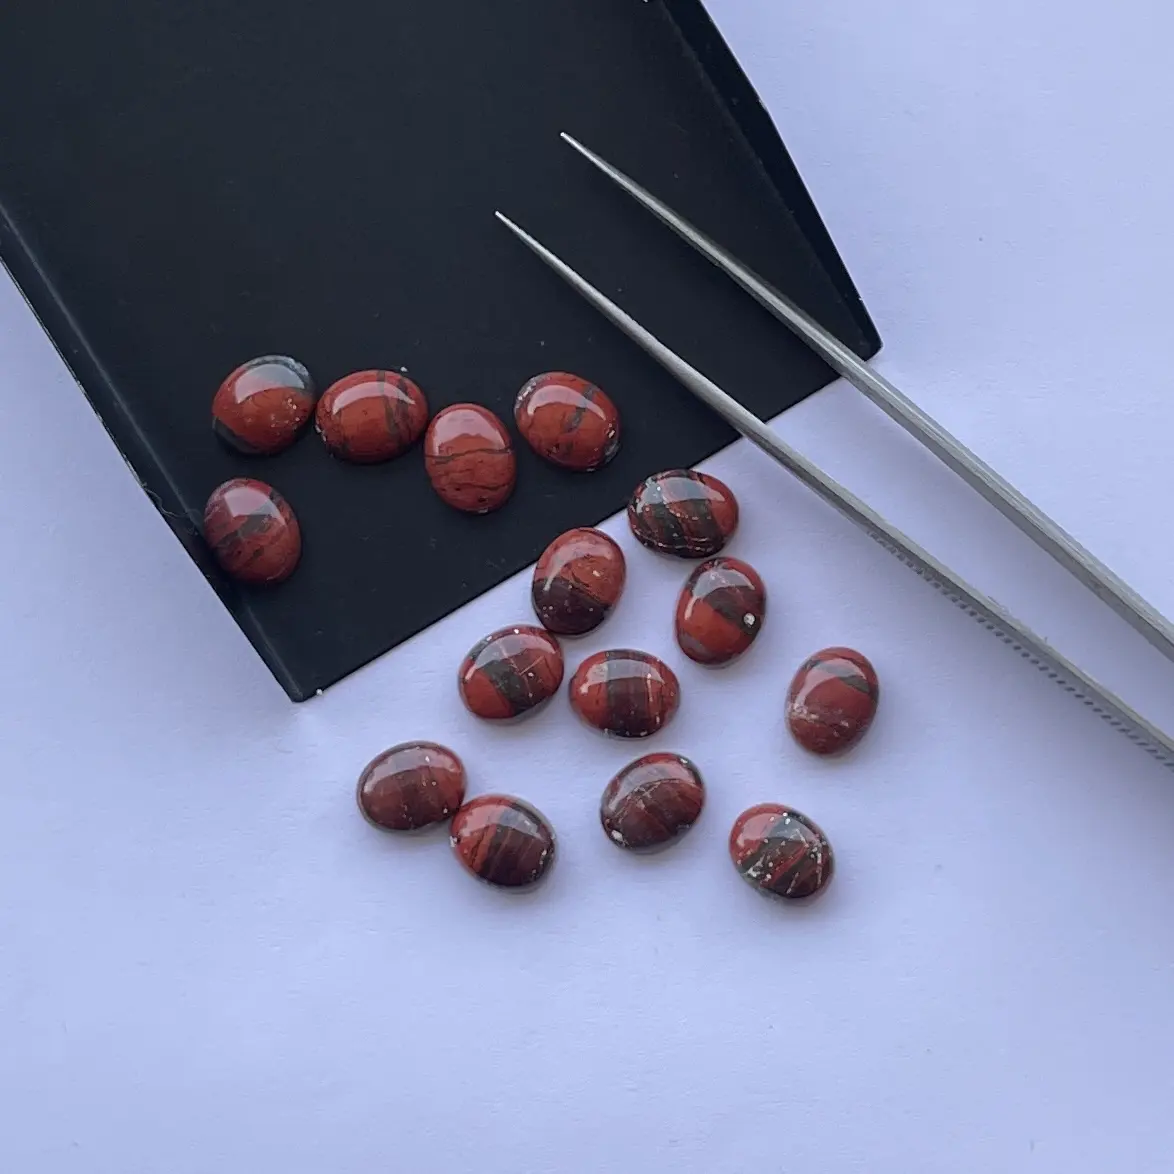 प्राकृतिक लाल पोस्ता जैस्पर स्टोन चिकना अंडाकार फ्लैट बैक कैलिब्रेटेड काबोचोन ढीले रत्न निर्माता अर्ध कीमती थोक